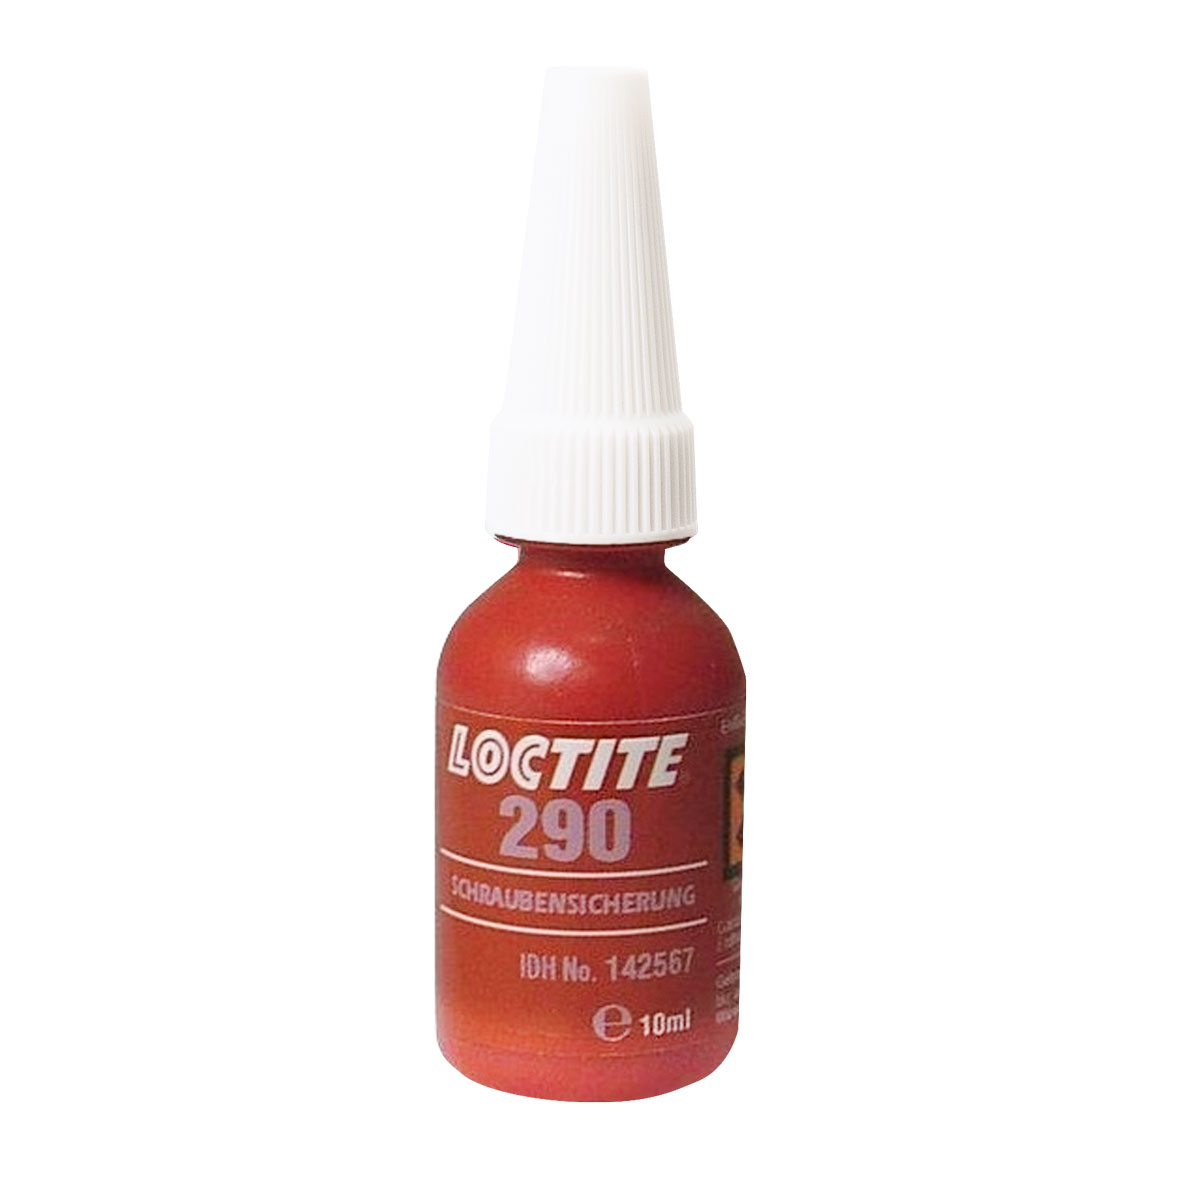 Loctite 290 instant adhesive, 10 ml